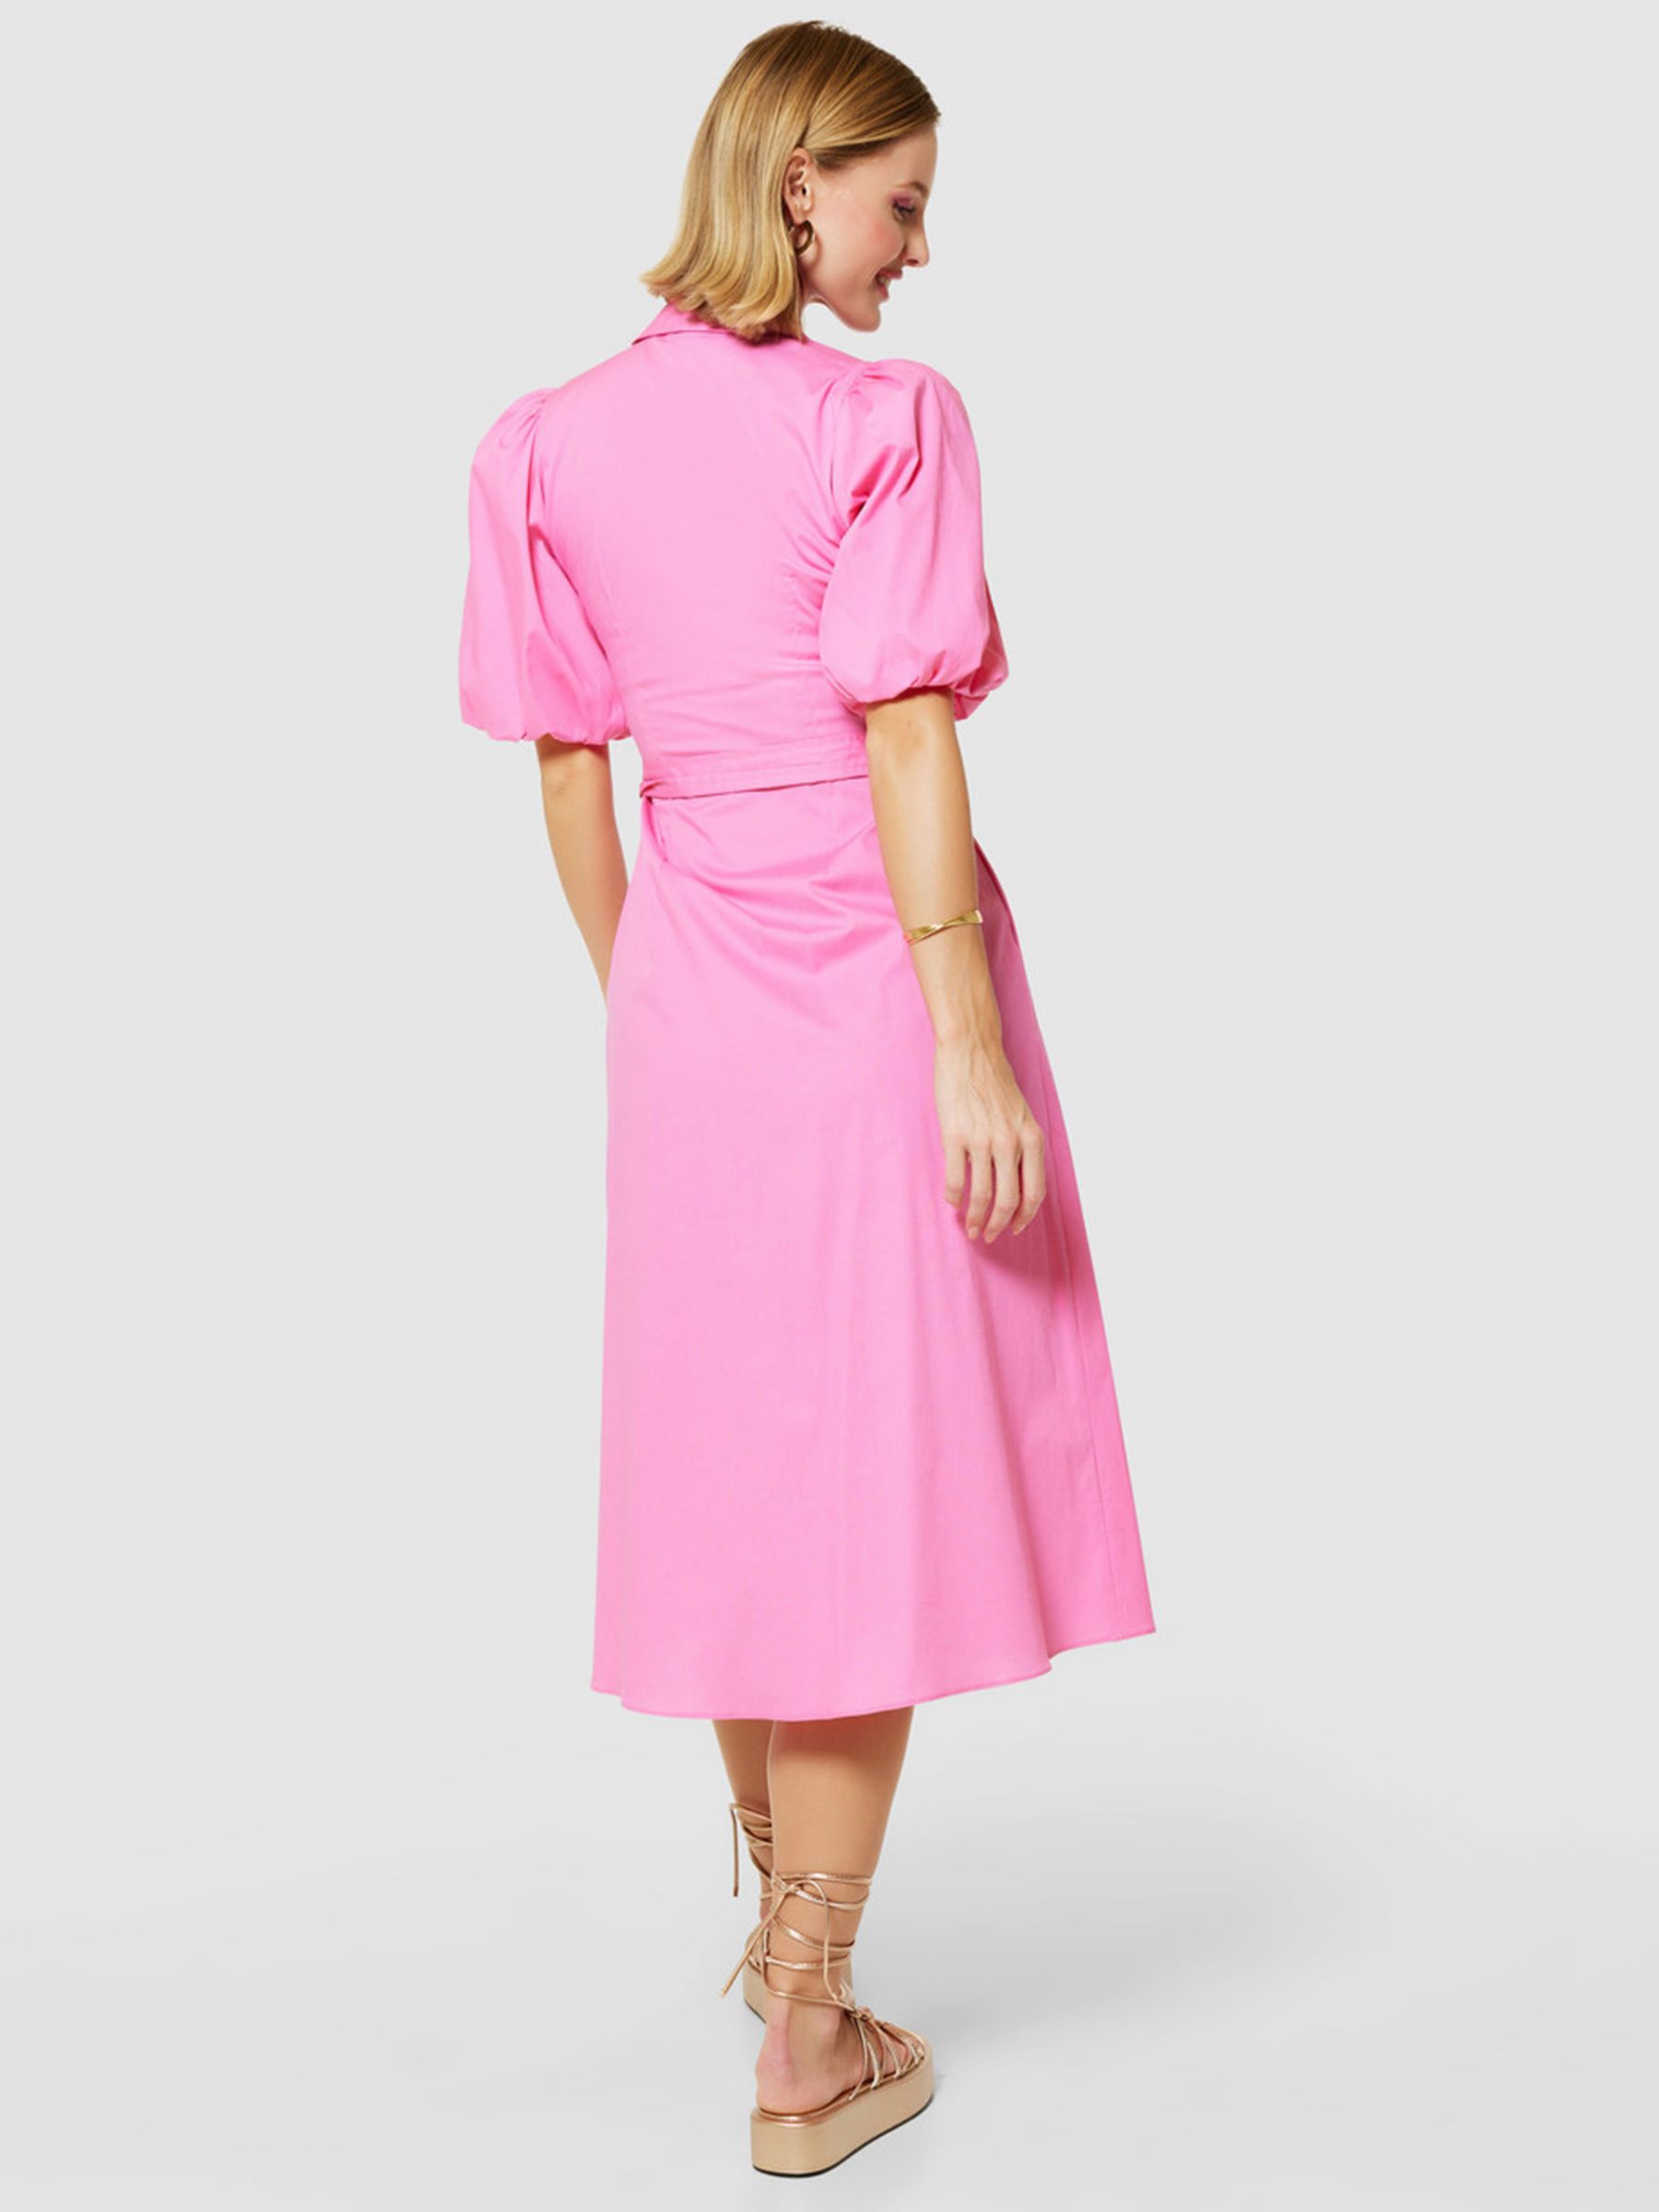 Closet London A-Line Tie Waist Shirt Dress, Pink, 8